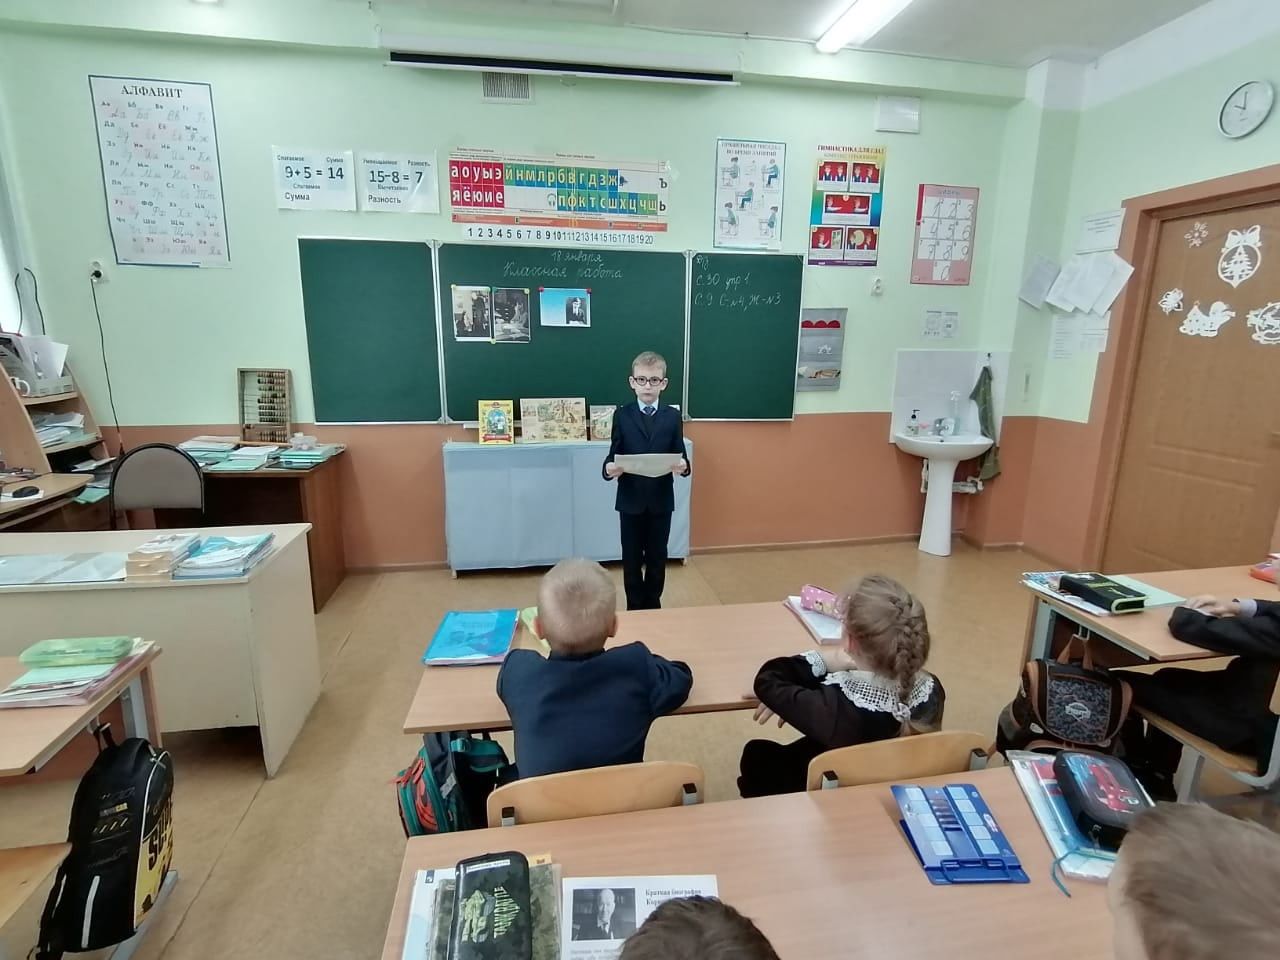 В камполянской школе №1 прошел Урок литературного чтения посвящённый творчеству К. И. Чуковского